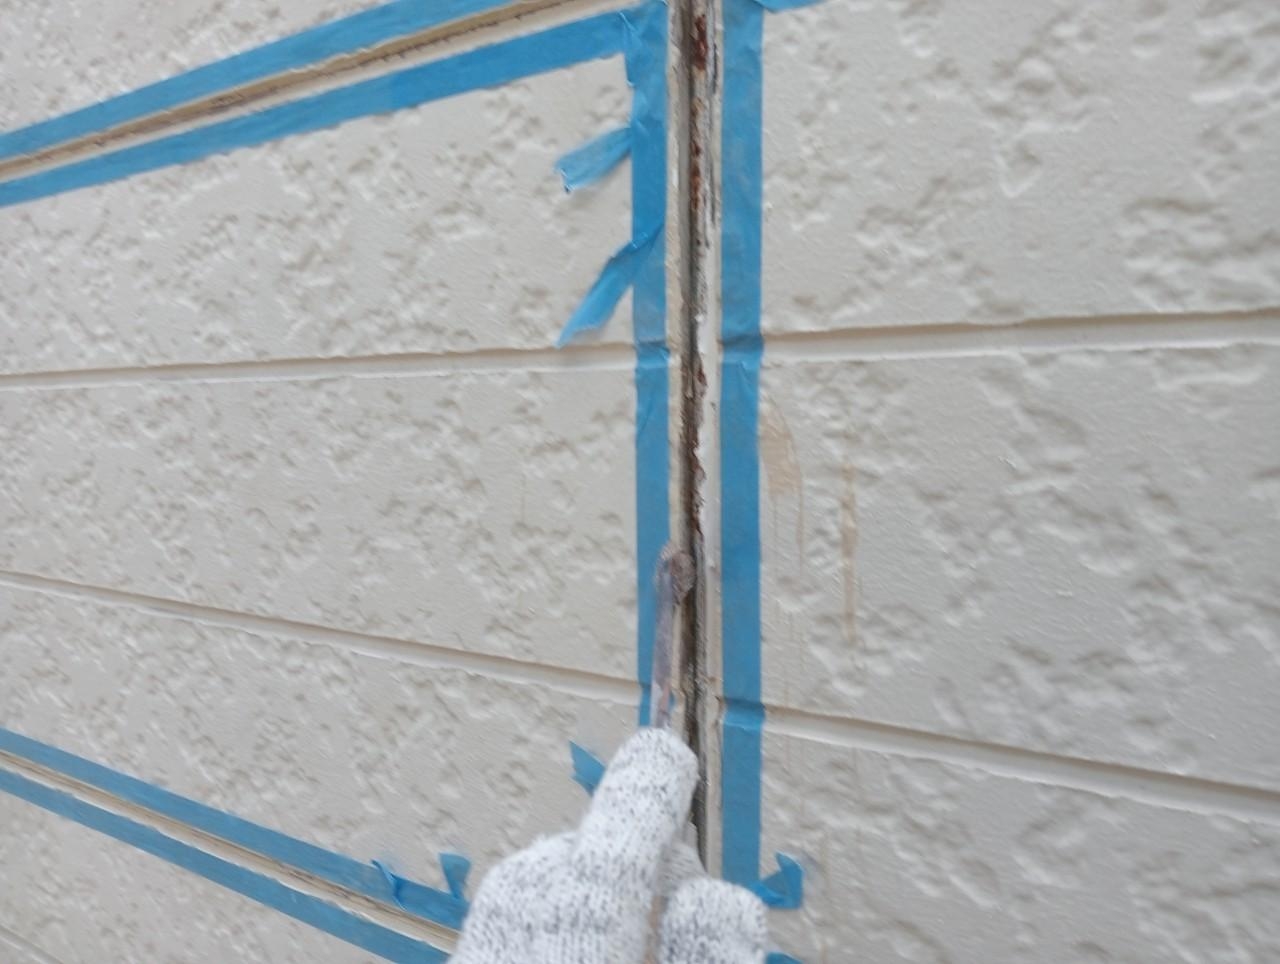 福岡県福岡市東区千早のA様邸でひび割れの補修や塗膜の剥がれを整えつつ高耐久塗料にて外壁と屋根の塗装を行いました。7/19完成です。【ホームページより】